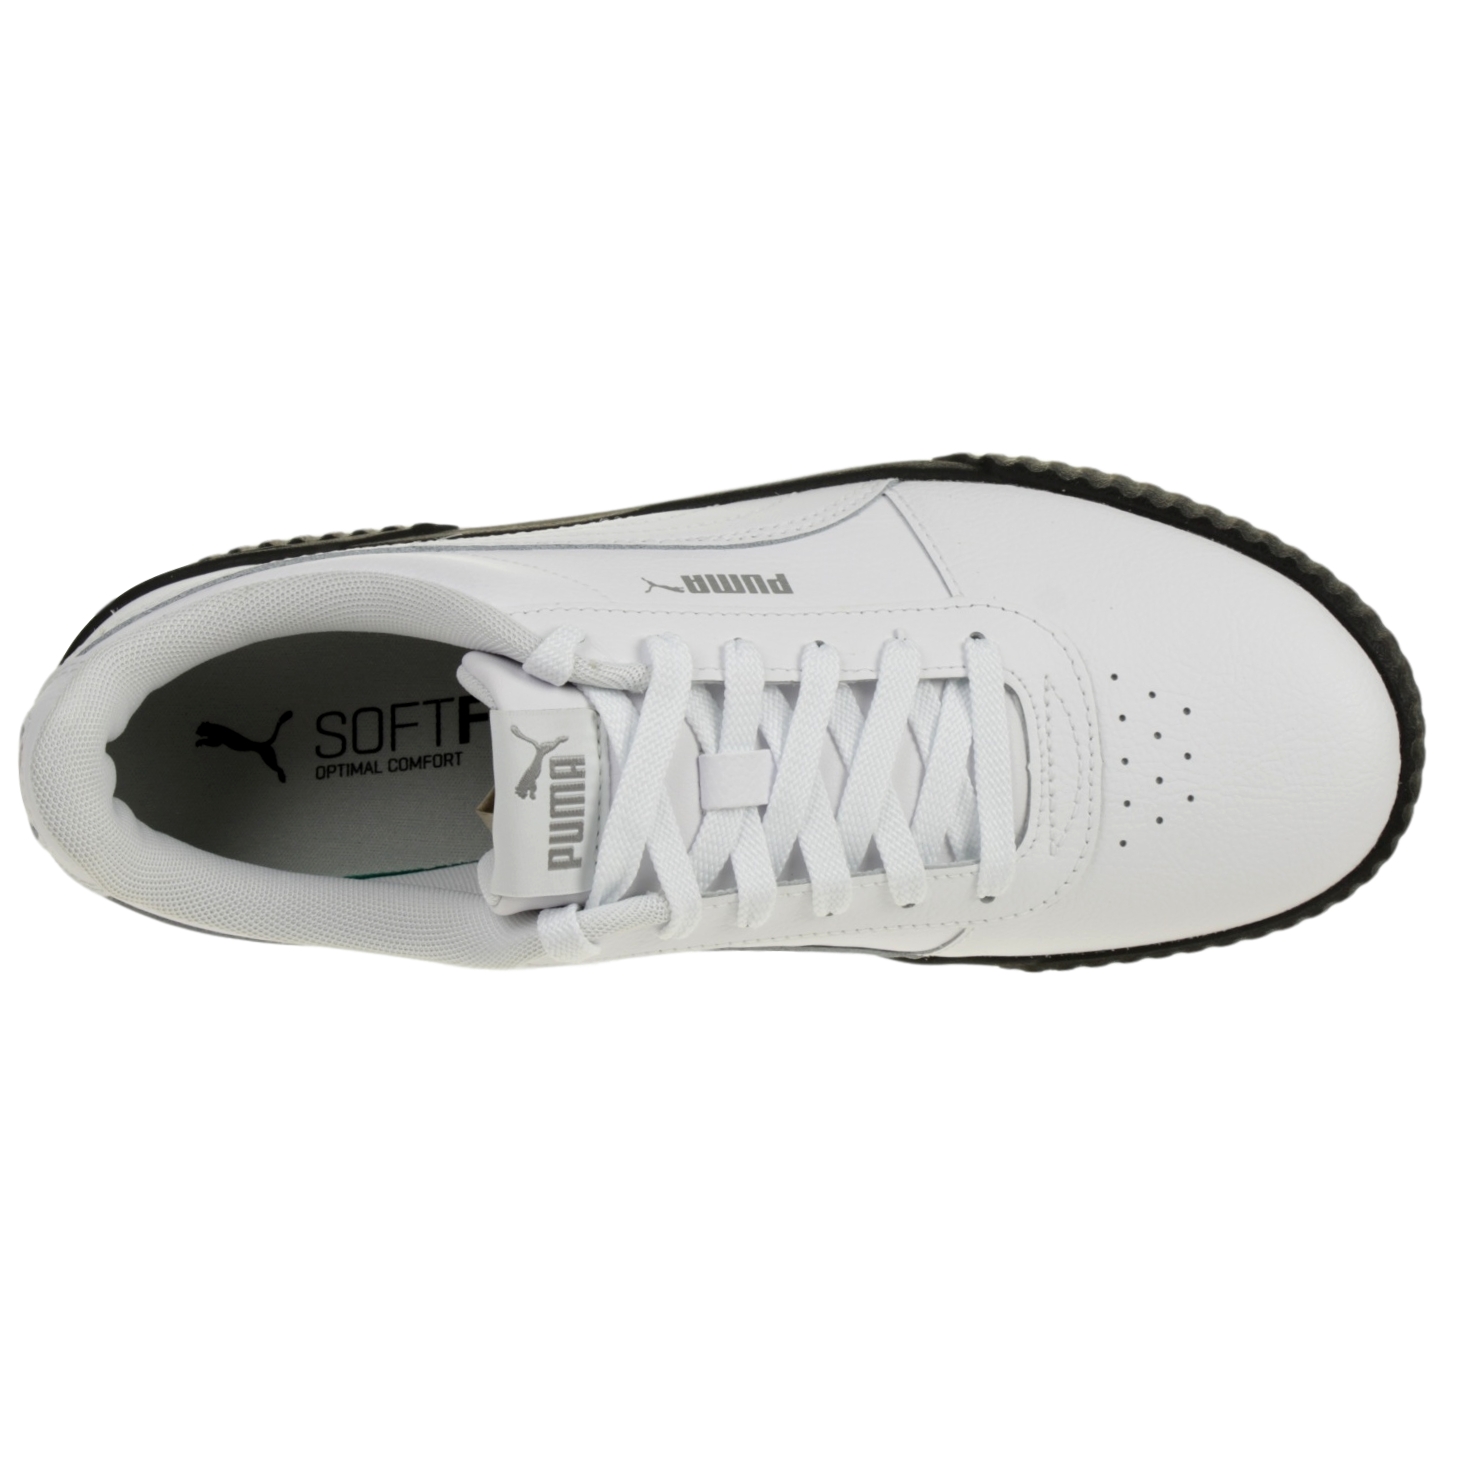 Puma Carina L Damen Sneaker Leder Schuhe 370325 17 Weiß